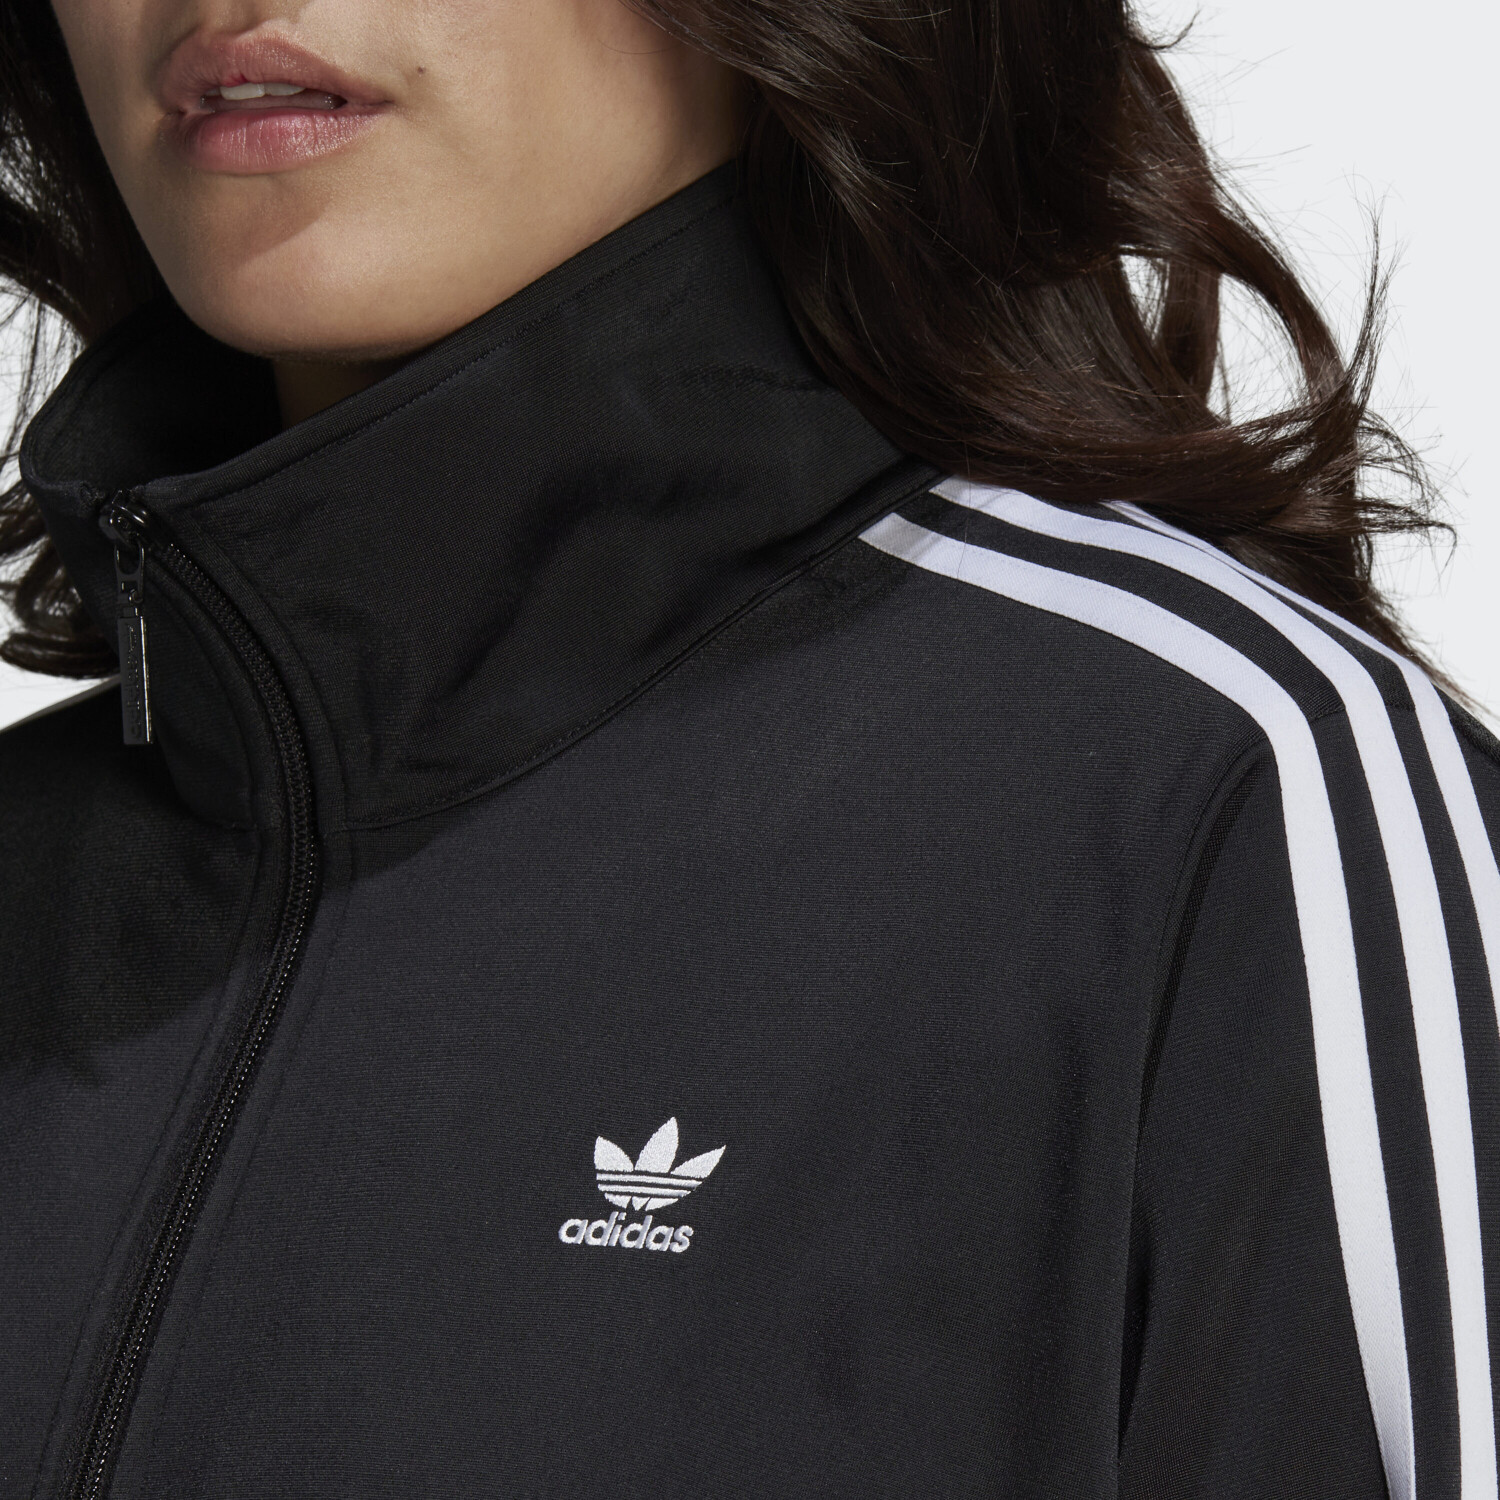 adicolor | Adidas Originals € Firebird Classics Jacke bei Preisvergleich ab 36,68 black